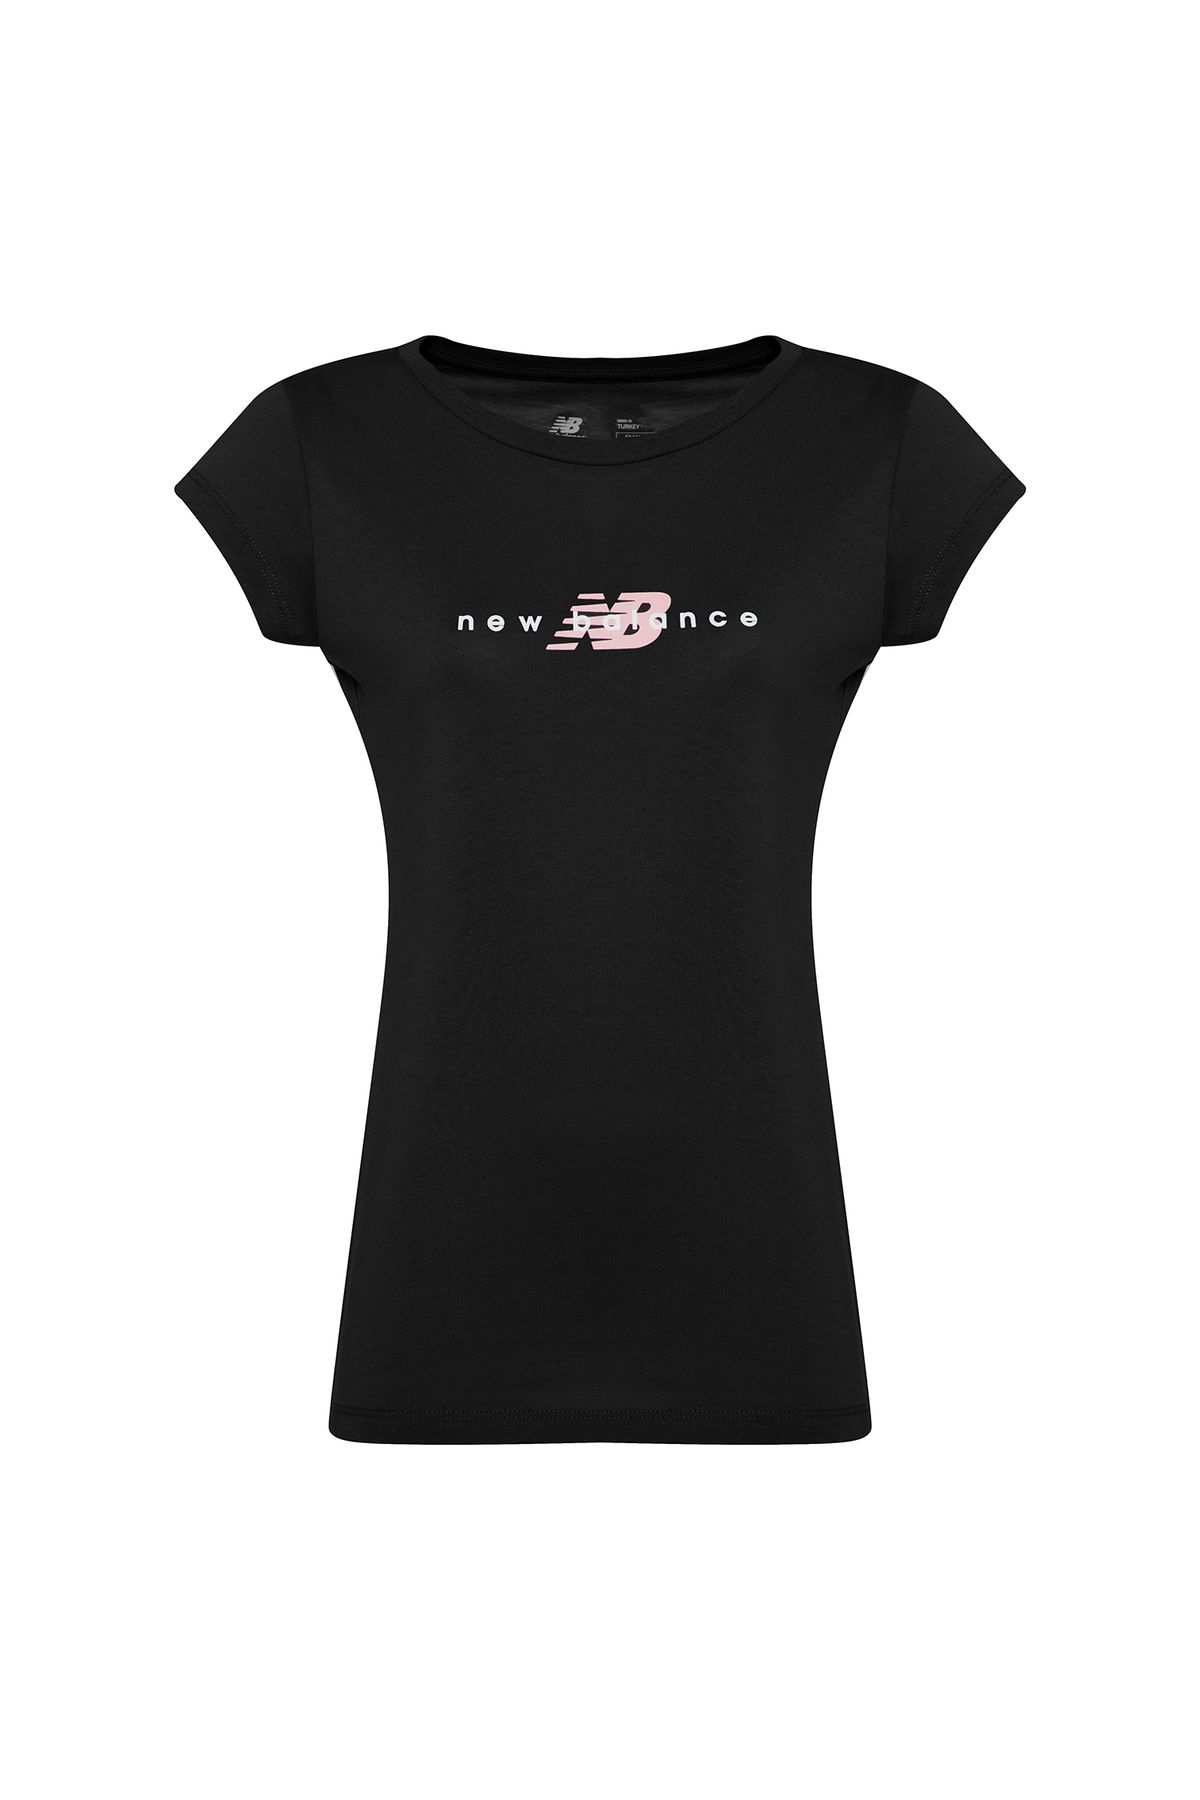 New Balance Kadın Siyah T-shirt Wtt2033-bk-siyah